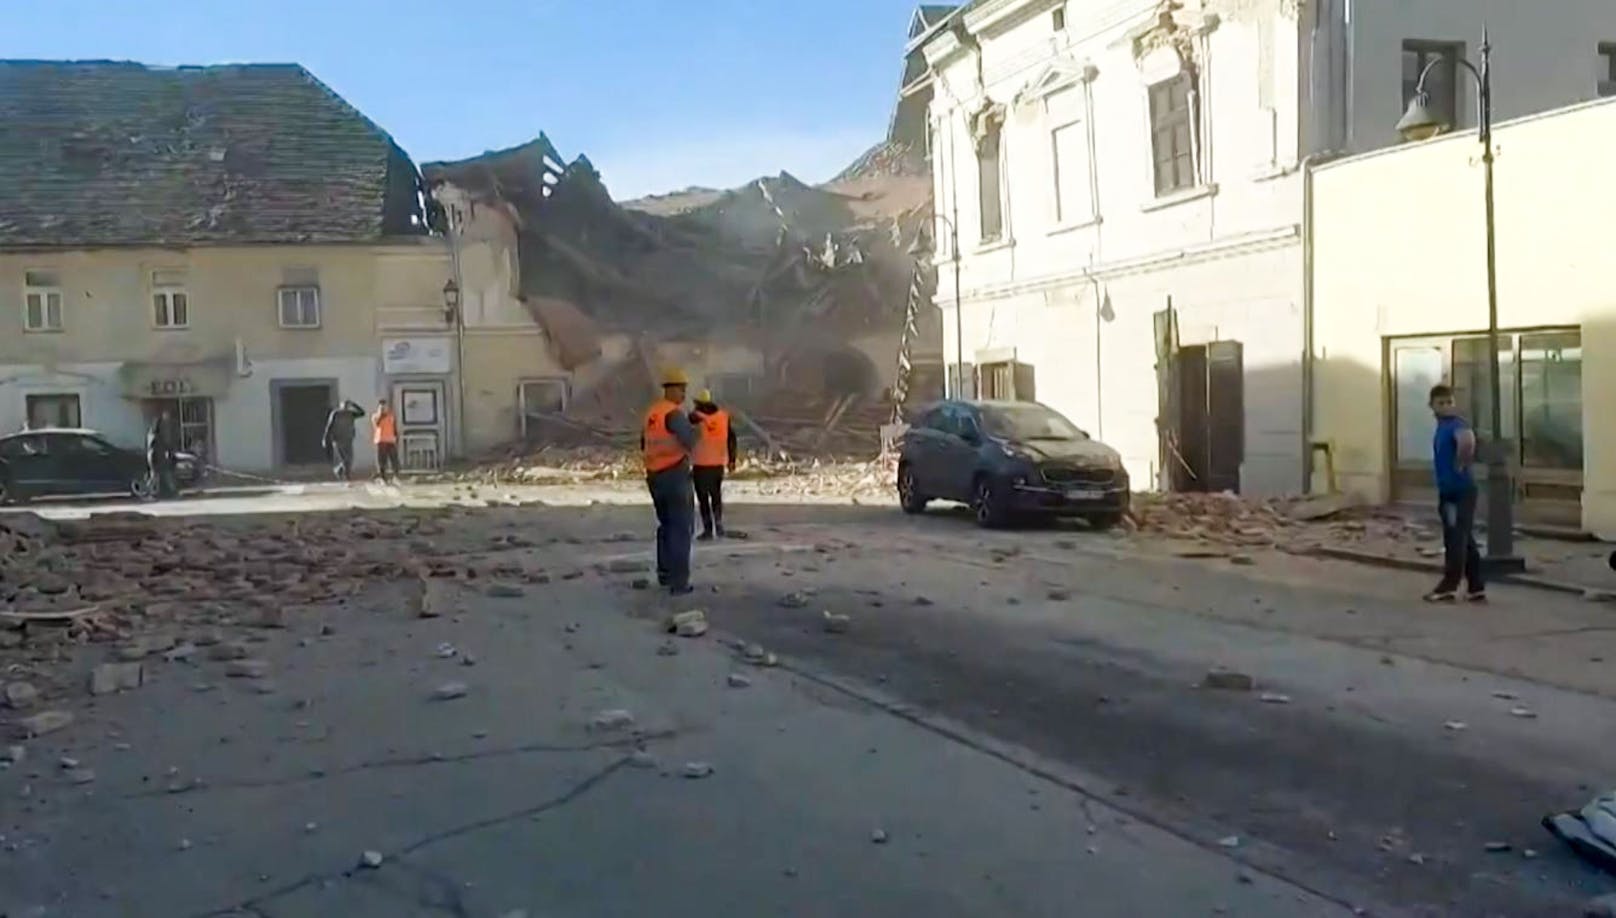 Durch das stärkste Erdbeben in der jüngeren Geschichte des Landes wurden zahlreiche Gebäude zerstört.